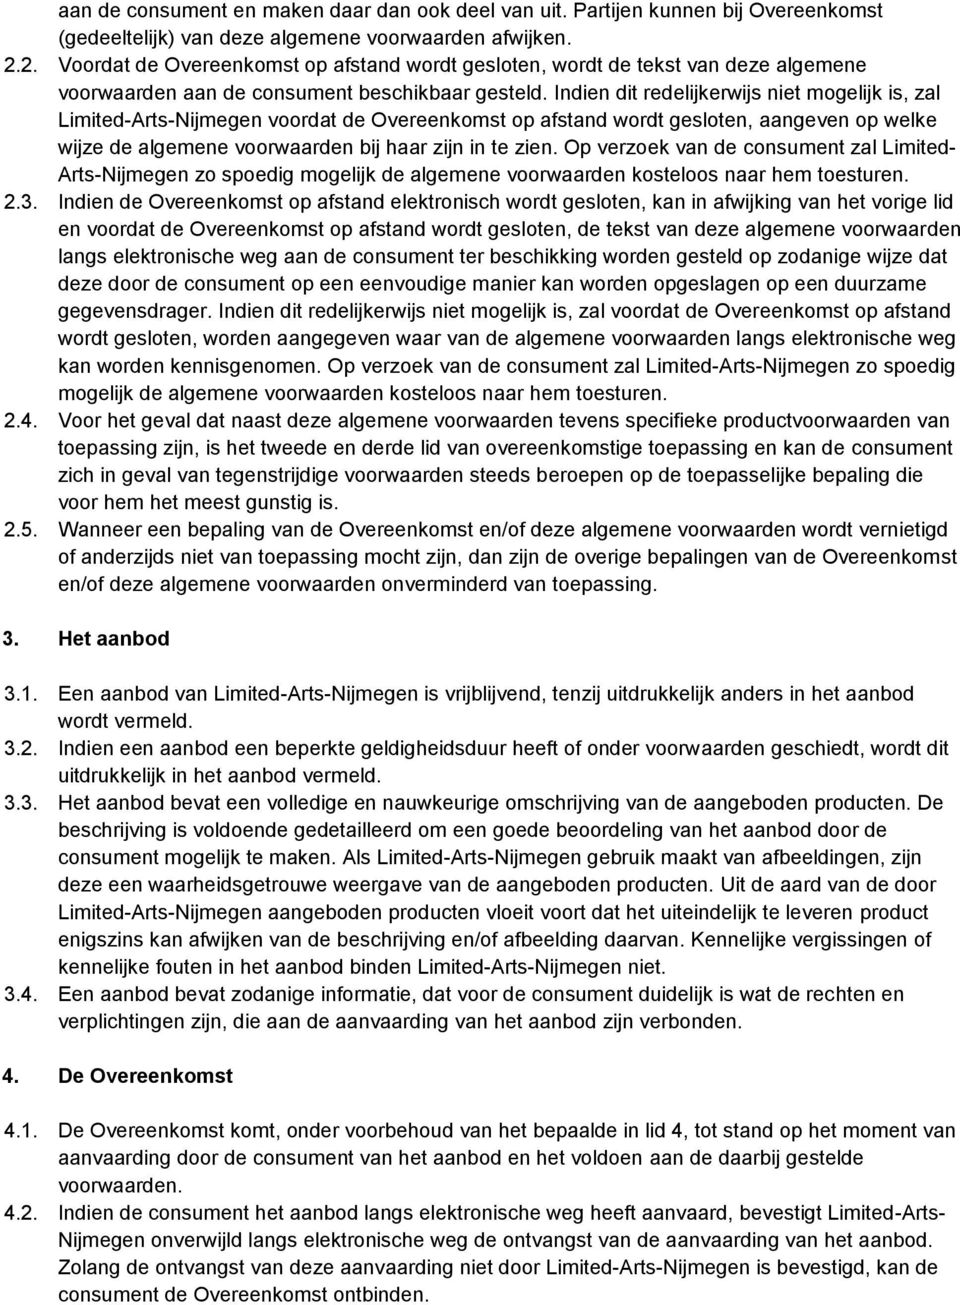 Indien dit redelijkerwijs niet mogelijk is, zal Limited-Arts-Nijmegen voordat de Overeenkomst op afstand wordt gesloten, aangeven op welke wijze de algemene voorwaarden bij haar zijn in te zien.